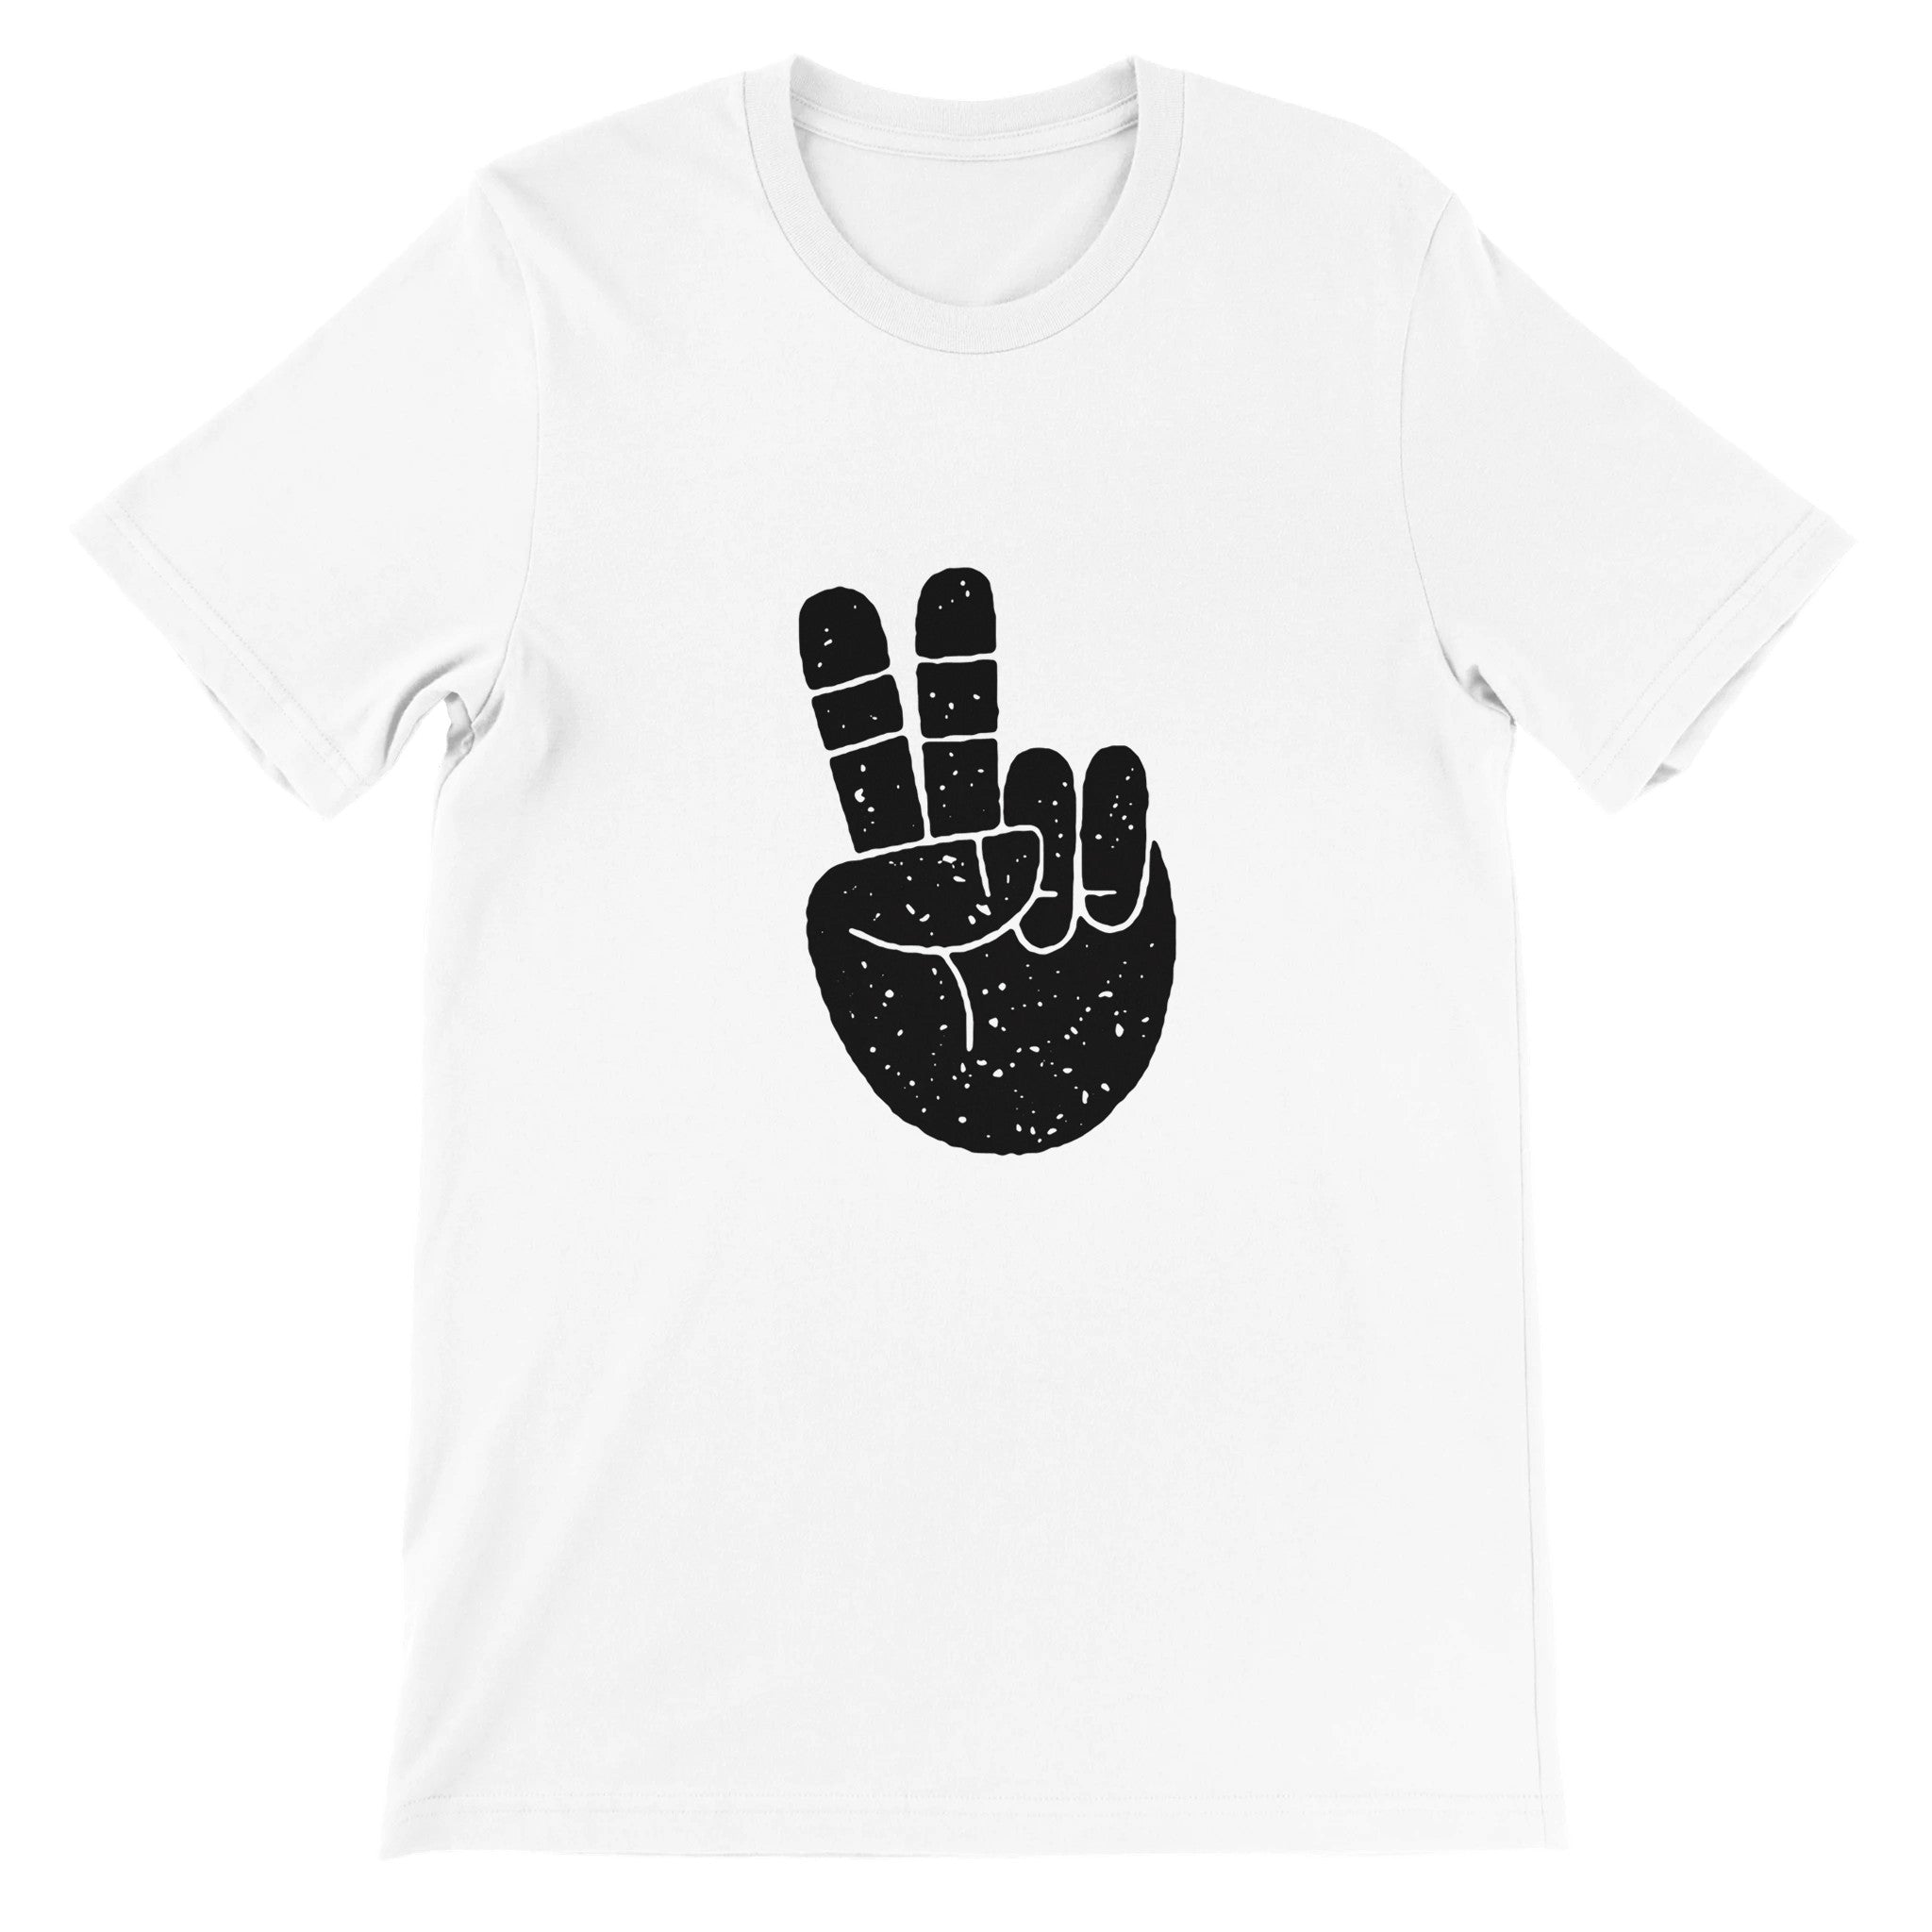 PEACE OUT Crewneck T-shirt - Optimalprint